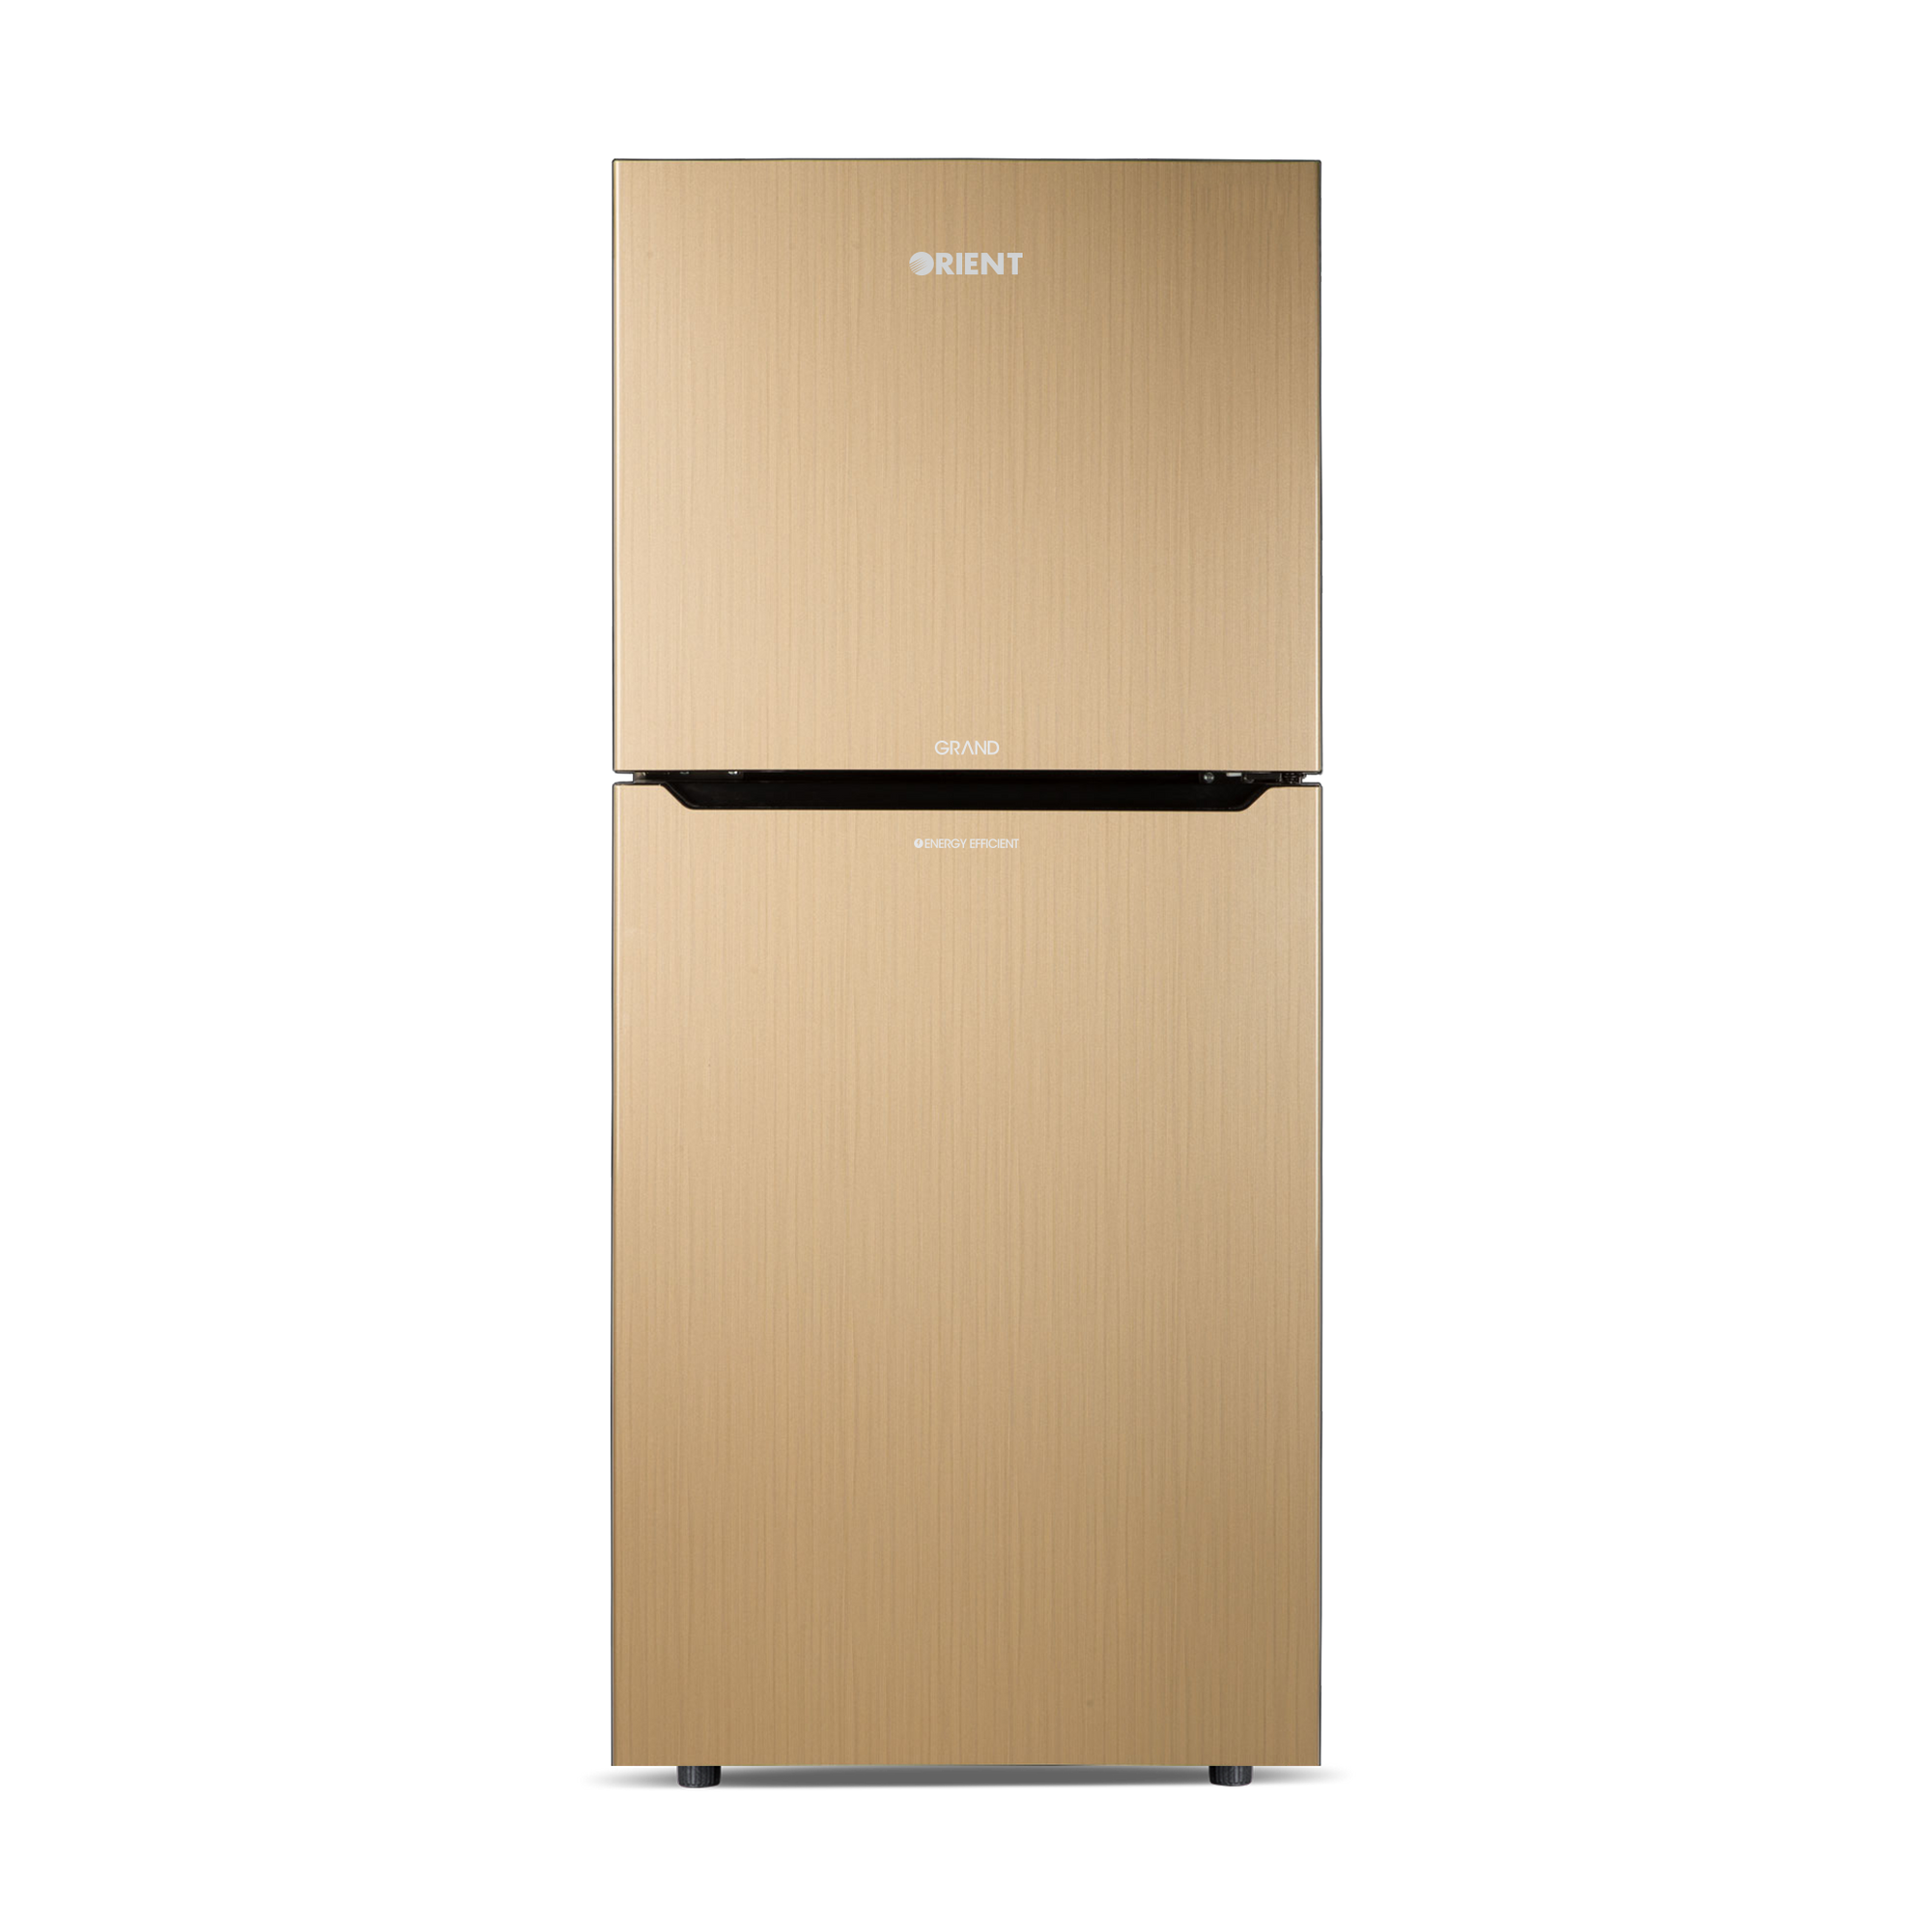 Orient Refrigerator Double Door - 205 Grand VCM